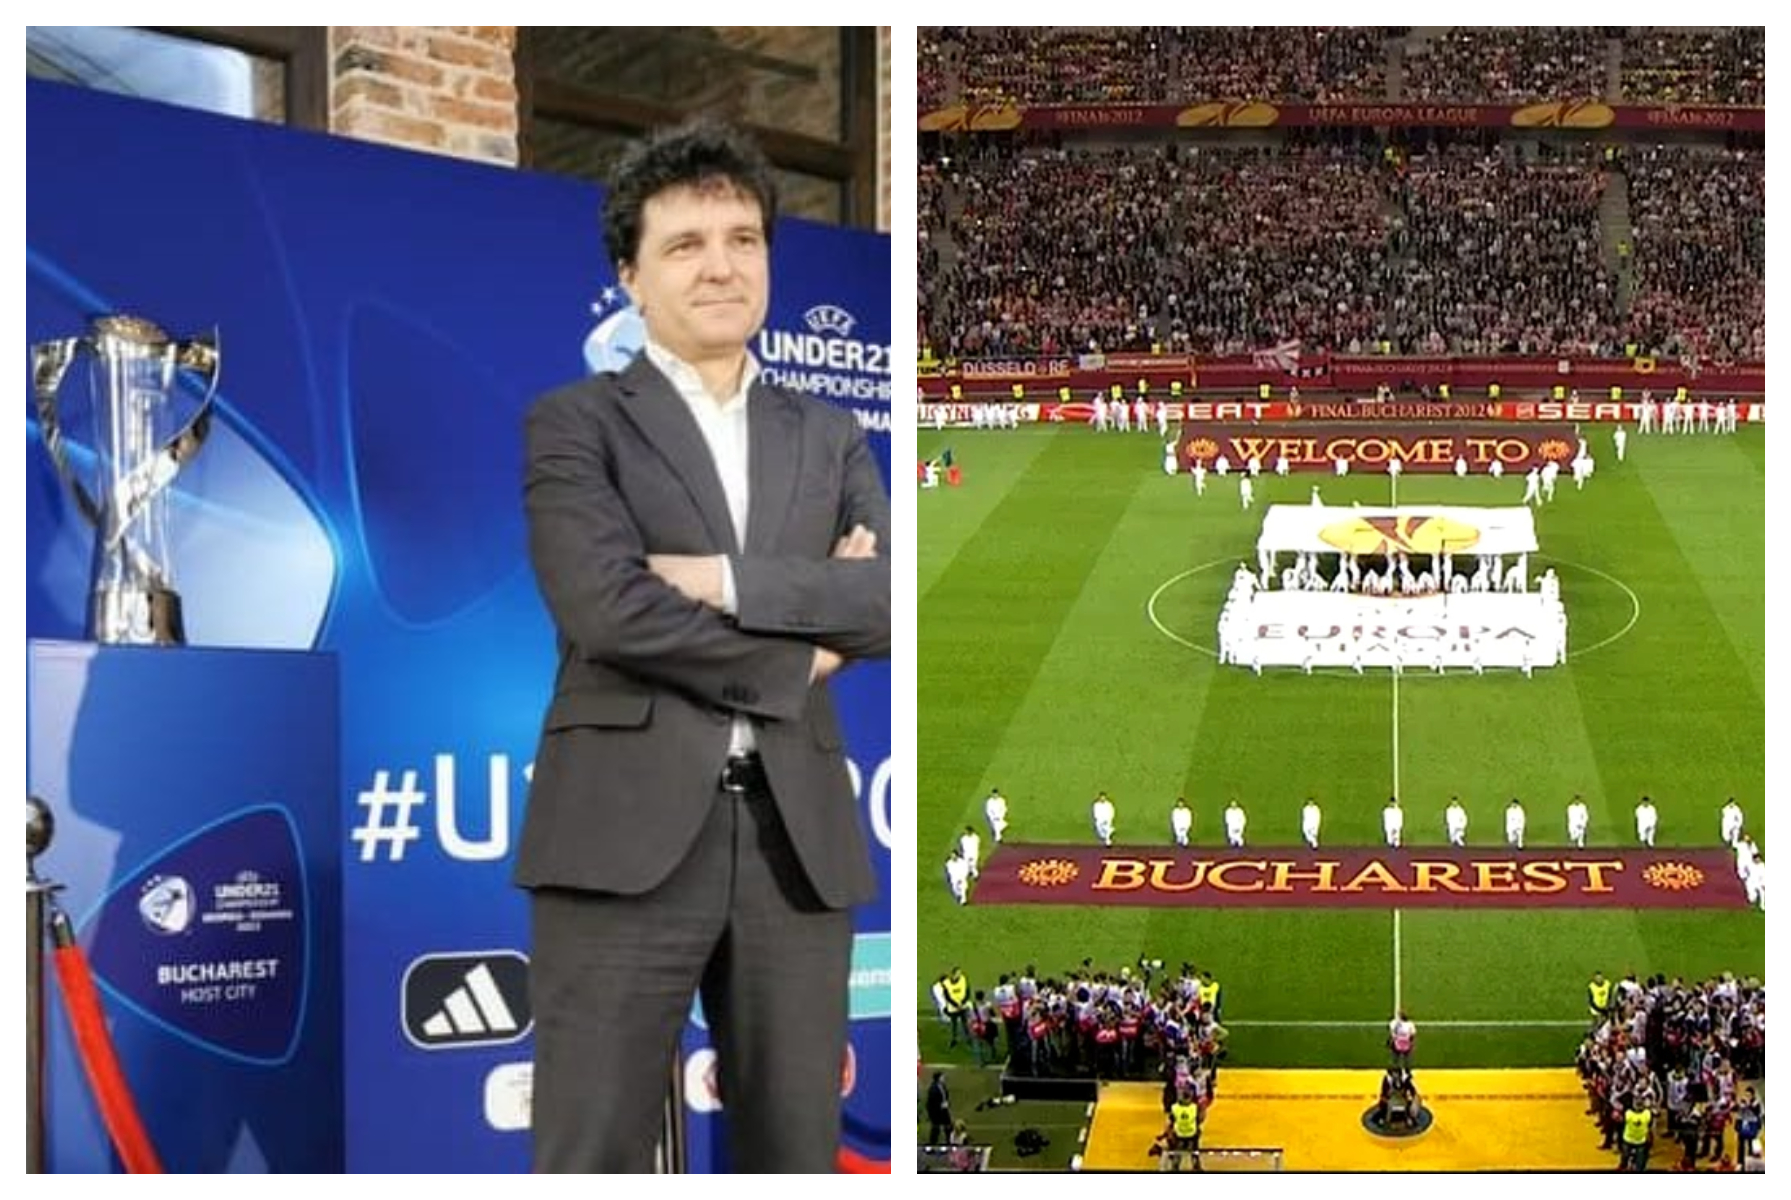 Bucureștiul vrea să fie gazdă pentru o nouă finală UEFA Europa League! În 2011, 30.000 de spanioli au făcut ”botezul” Arenei Naționale